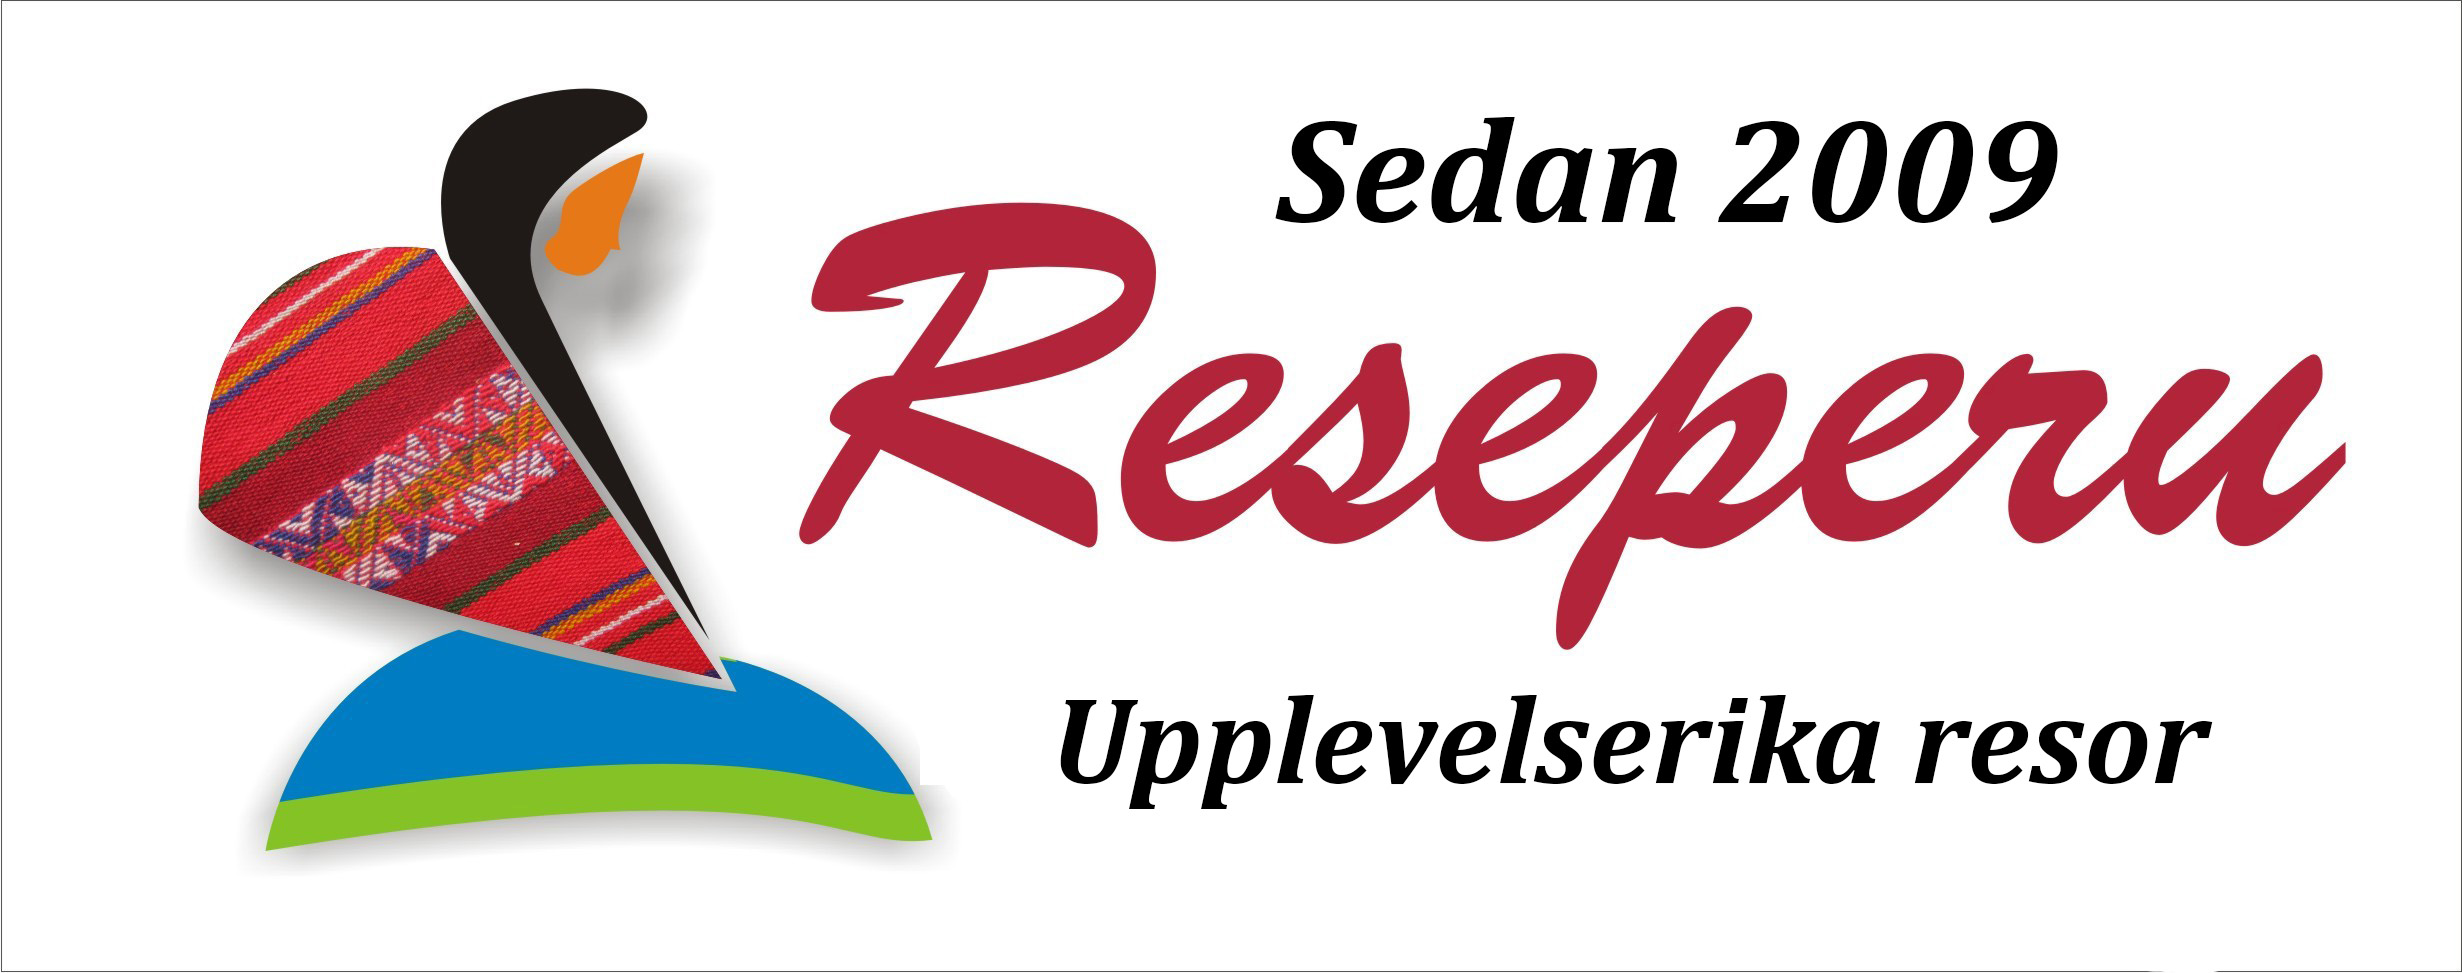 Reseperu sedan 2009